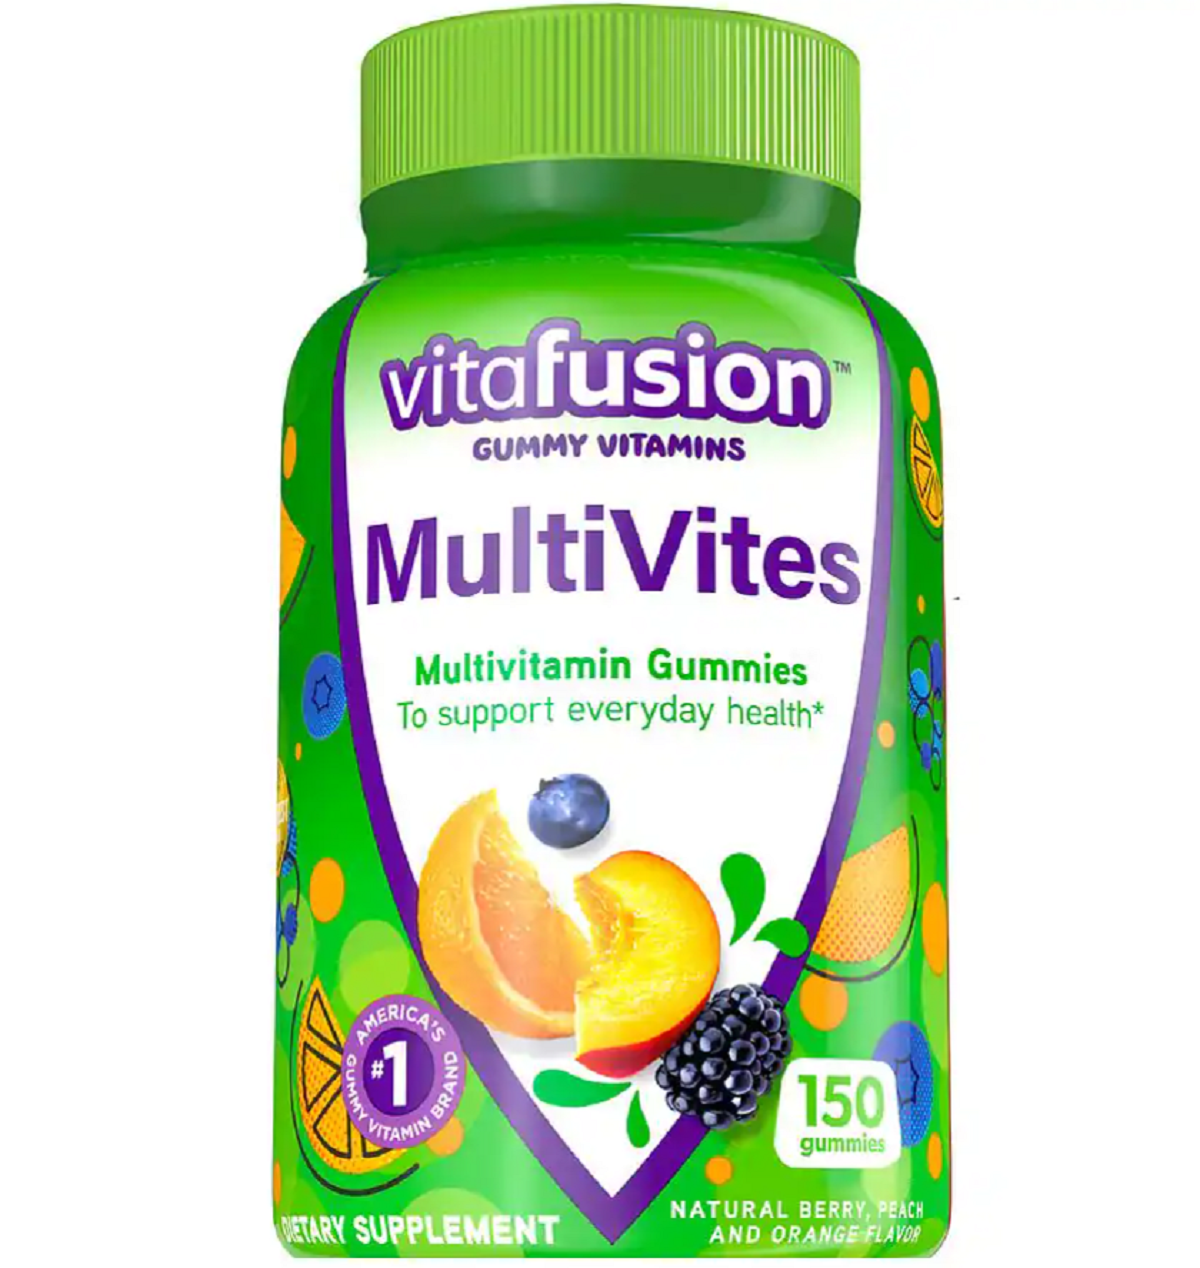 Vitafusion MultiVites Gummy Vitamins Natural Berry, Peach & Orange, Vitafusion or L'il Critters Coupon